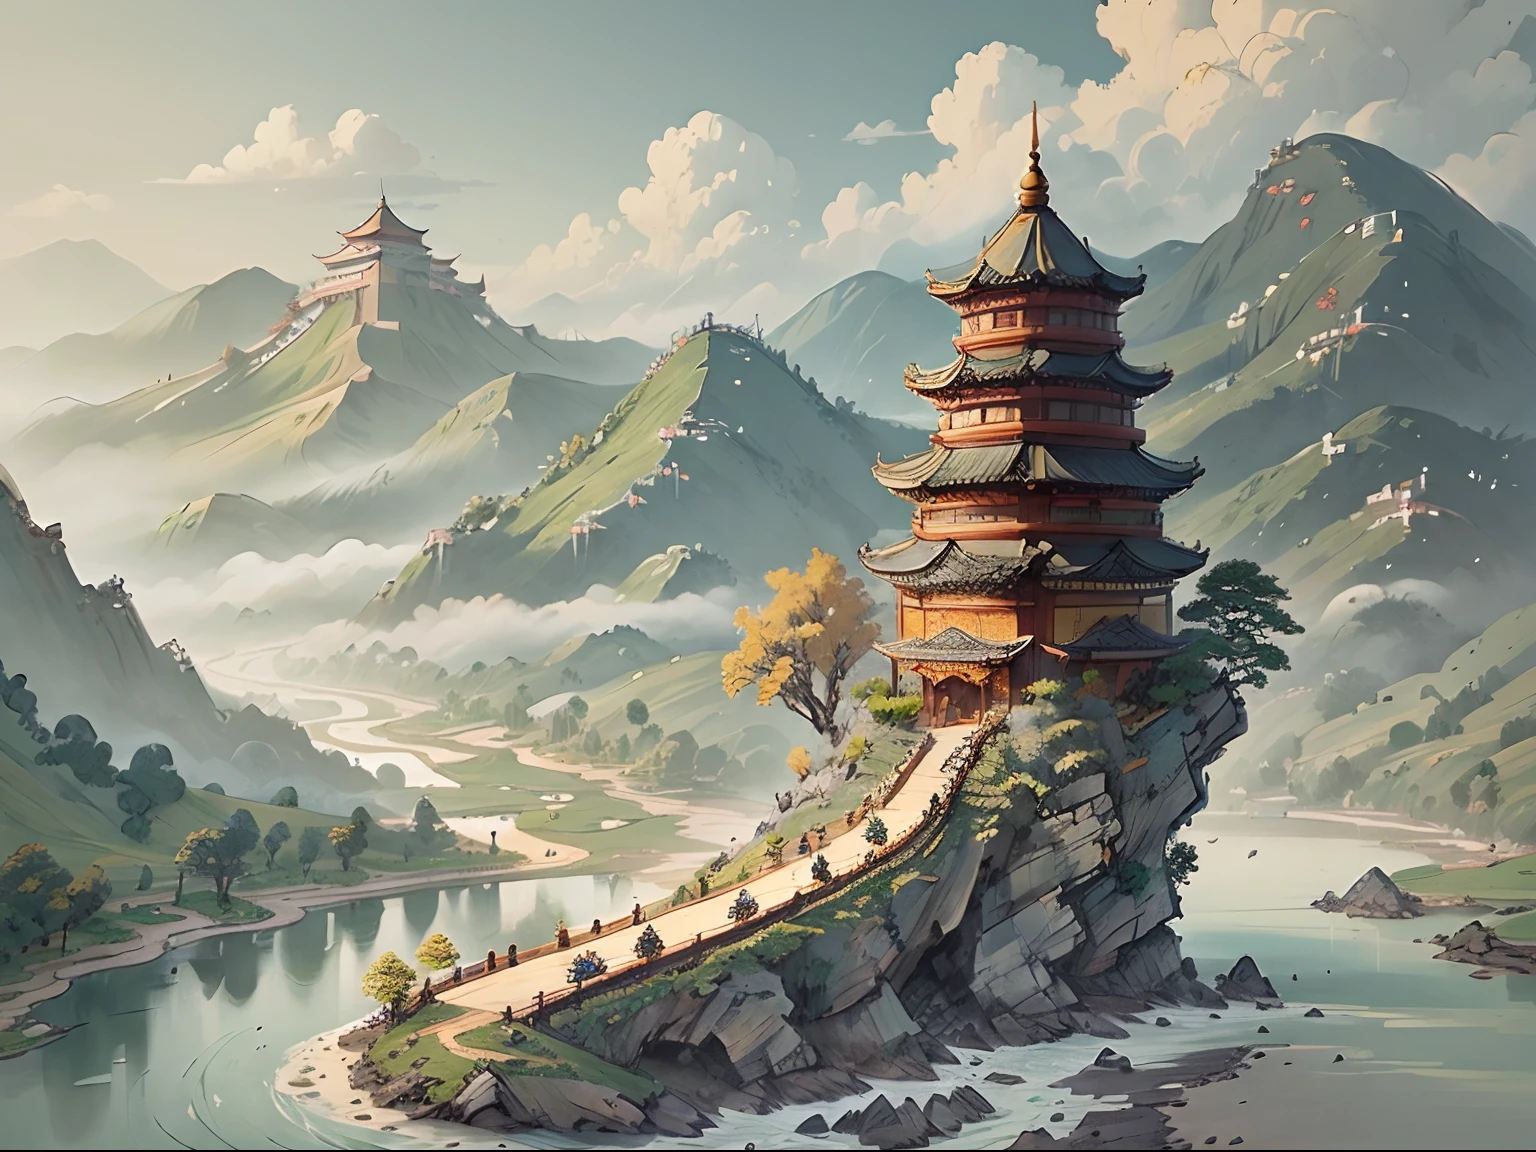 양피지 스타일의 산과 강이 있는 풍경 ((고대 중국)) 탑 & 산 A ((작은 중국 용))